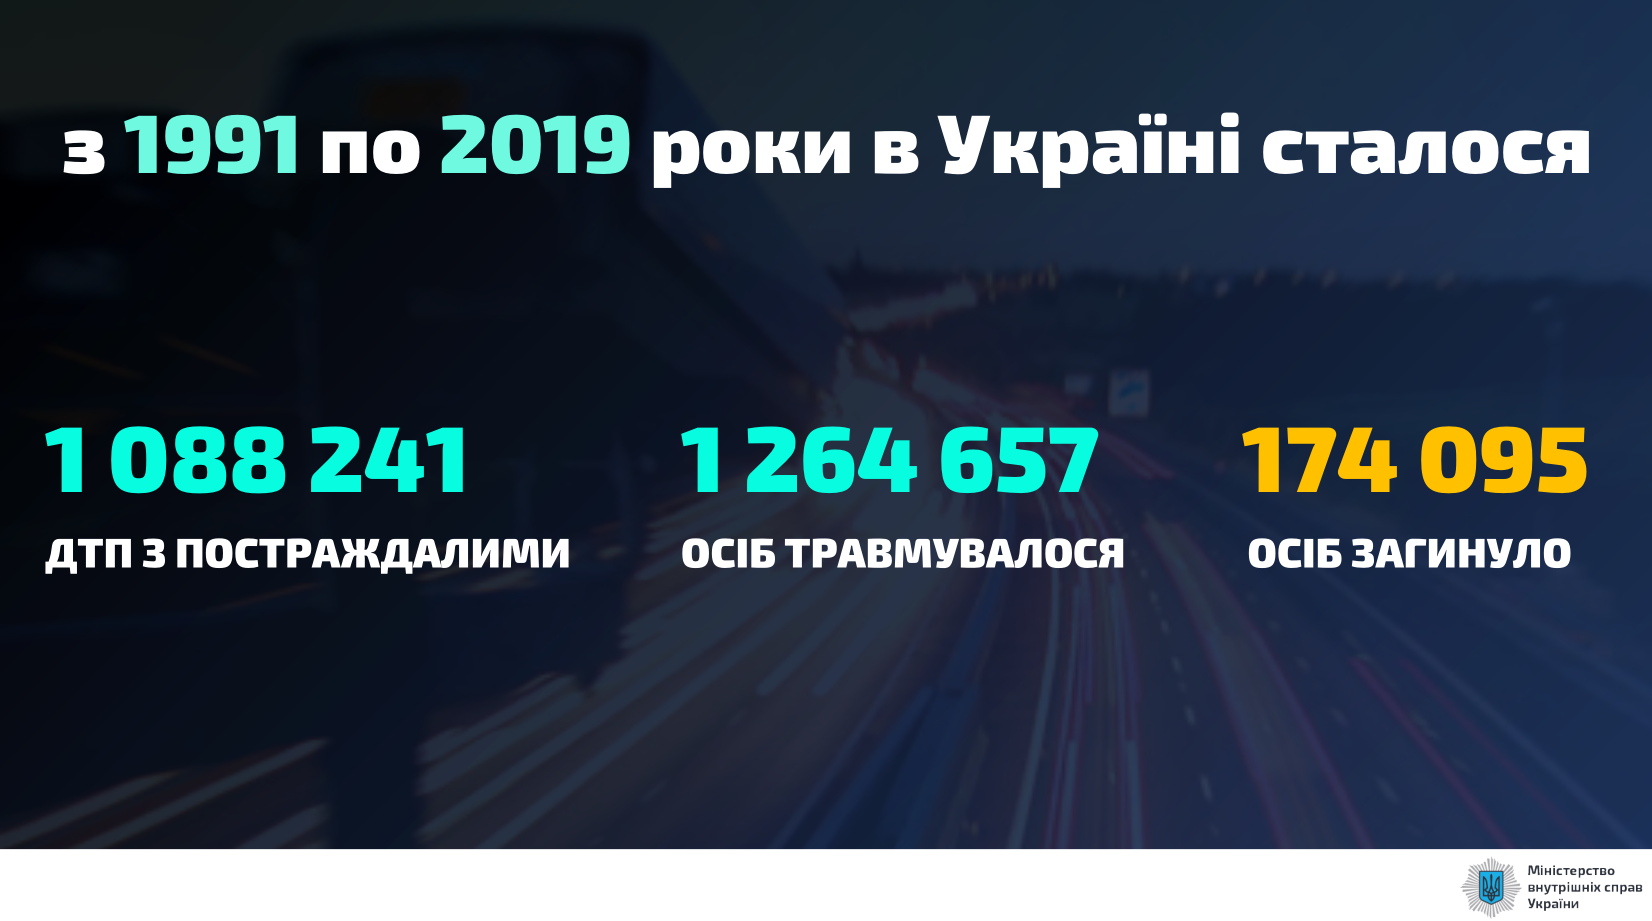 Количество ДТП в Украине с 1991 по 2019 годы.